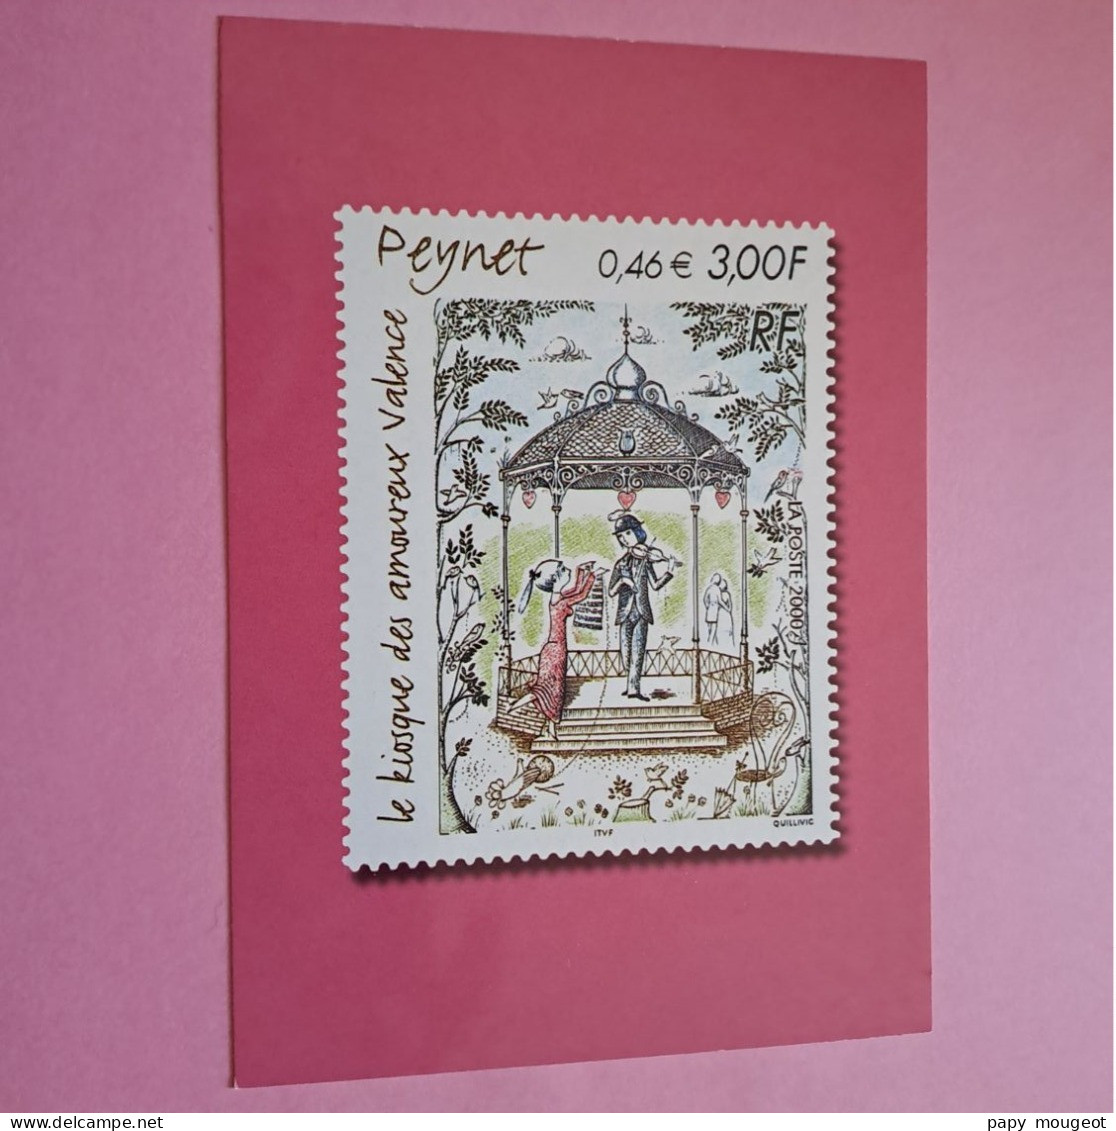 Timbre-poste "Le Kiosque Des Amoureux Valence" Peynet 2000 - Stamps (pictures)